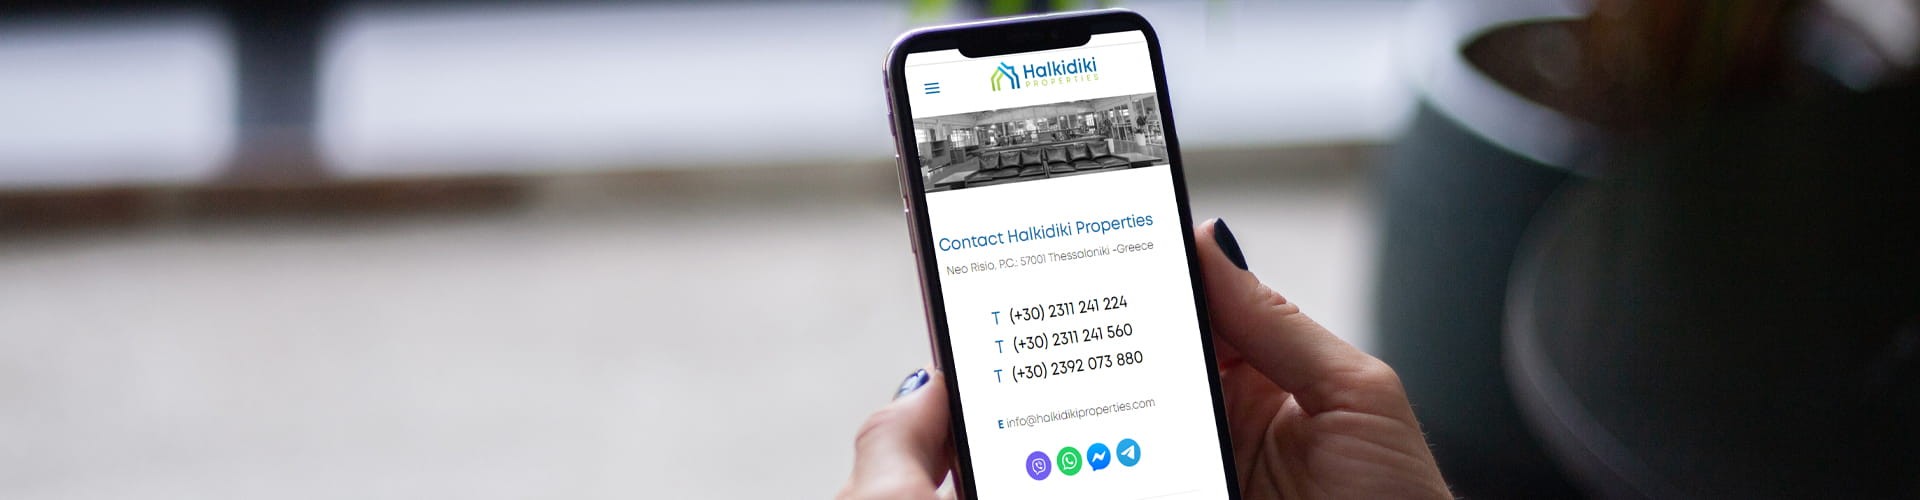 Contact Halkidiki Properties